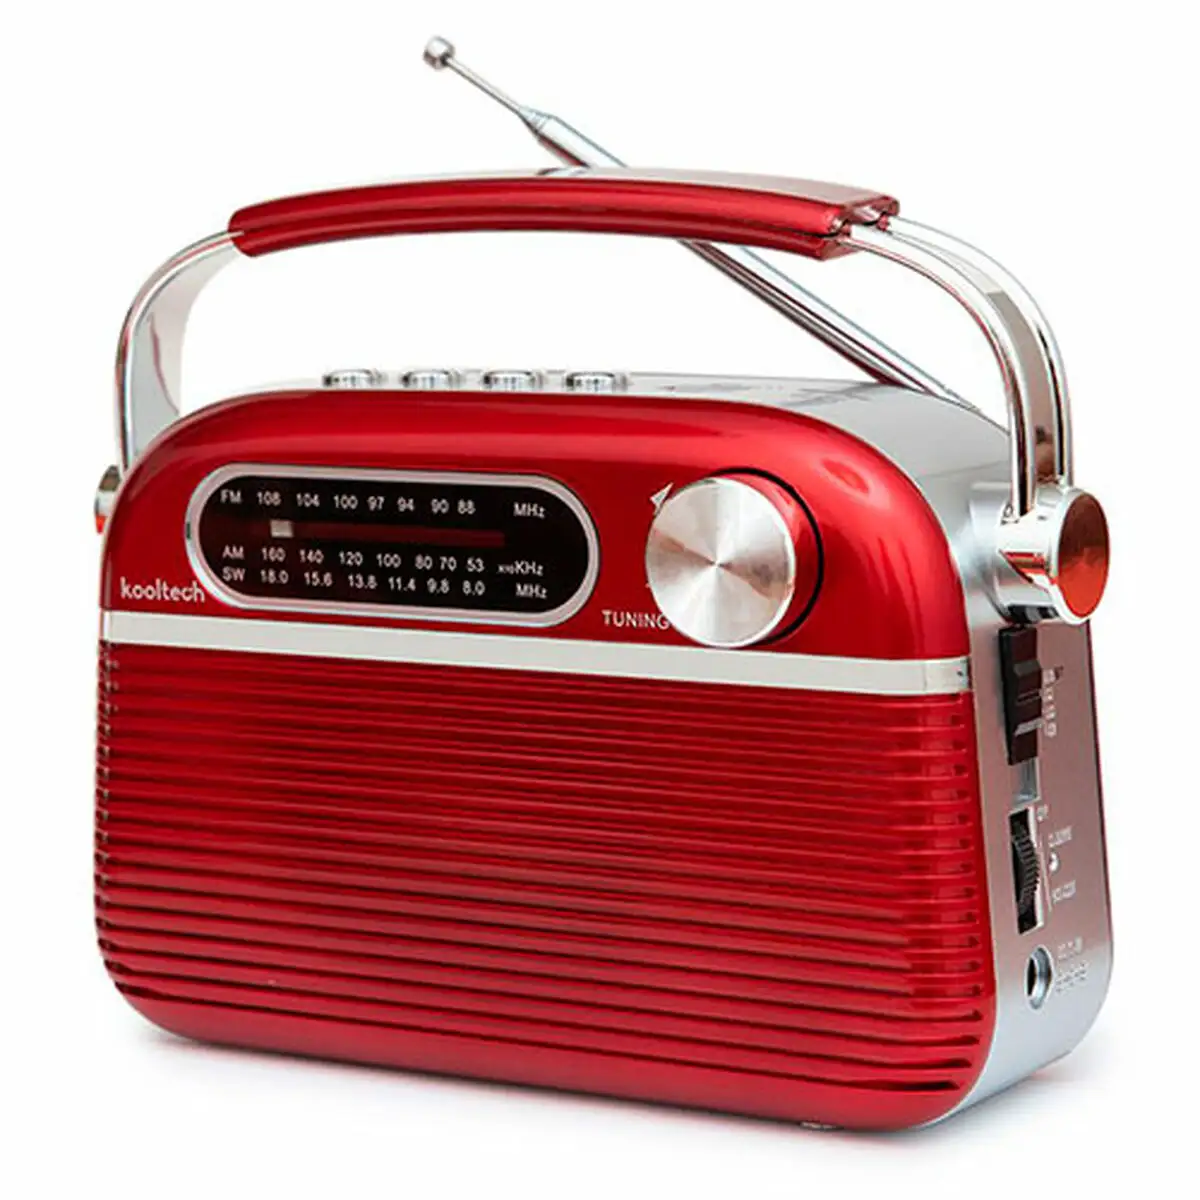 Radio bluetooth portable kooltech rouge vintage_4231. DIAYTAR SENEGAL - Là où le Shopping Devient une Expérience. Naviguez à travers notre catalogue diversifié et découvrez des produits qui ajoutent de la couleur et de la passion à votre vie.